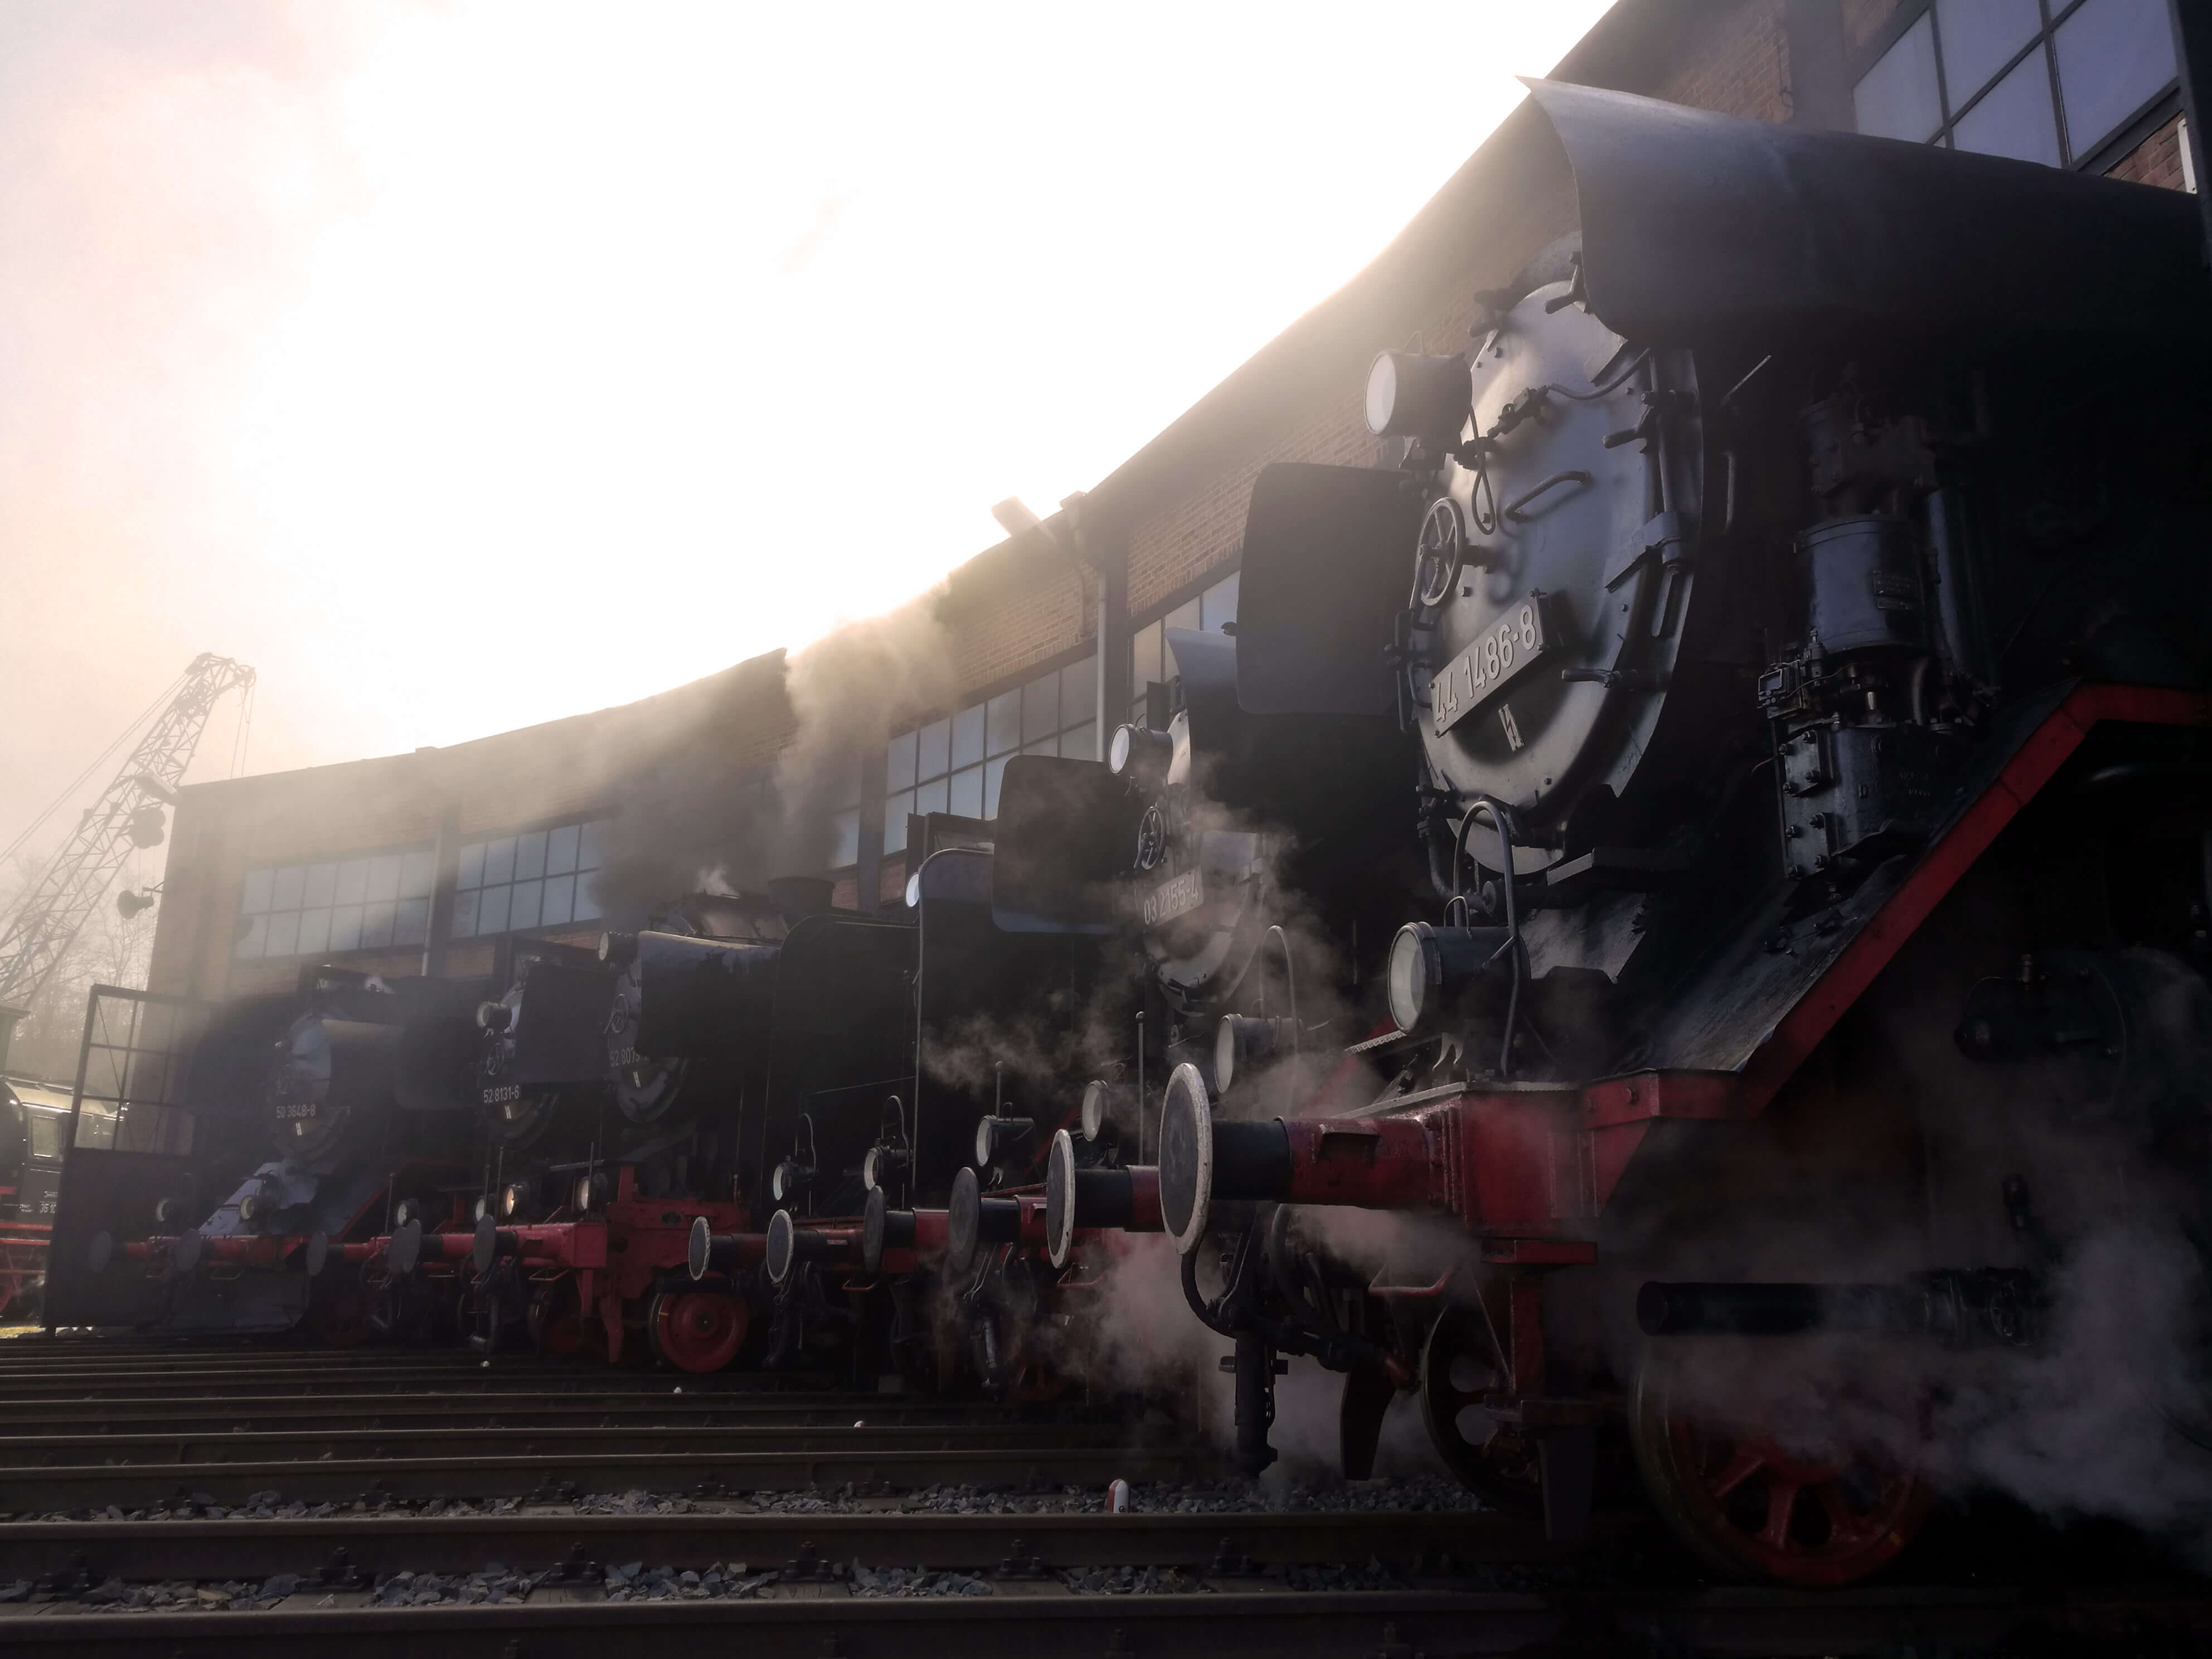 Rauchende Dampflokomotiven vor einem Bahnhof